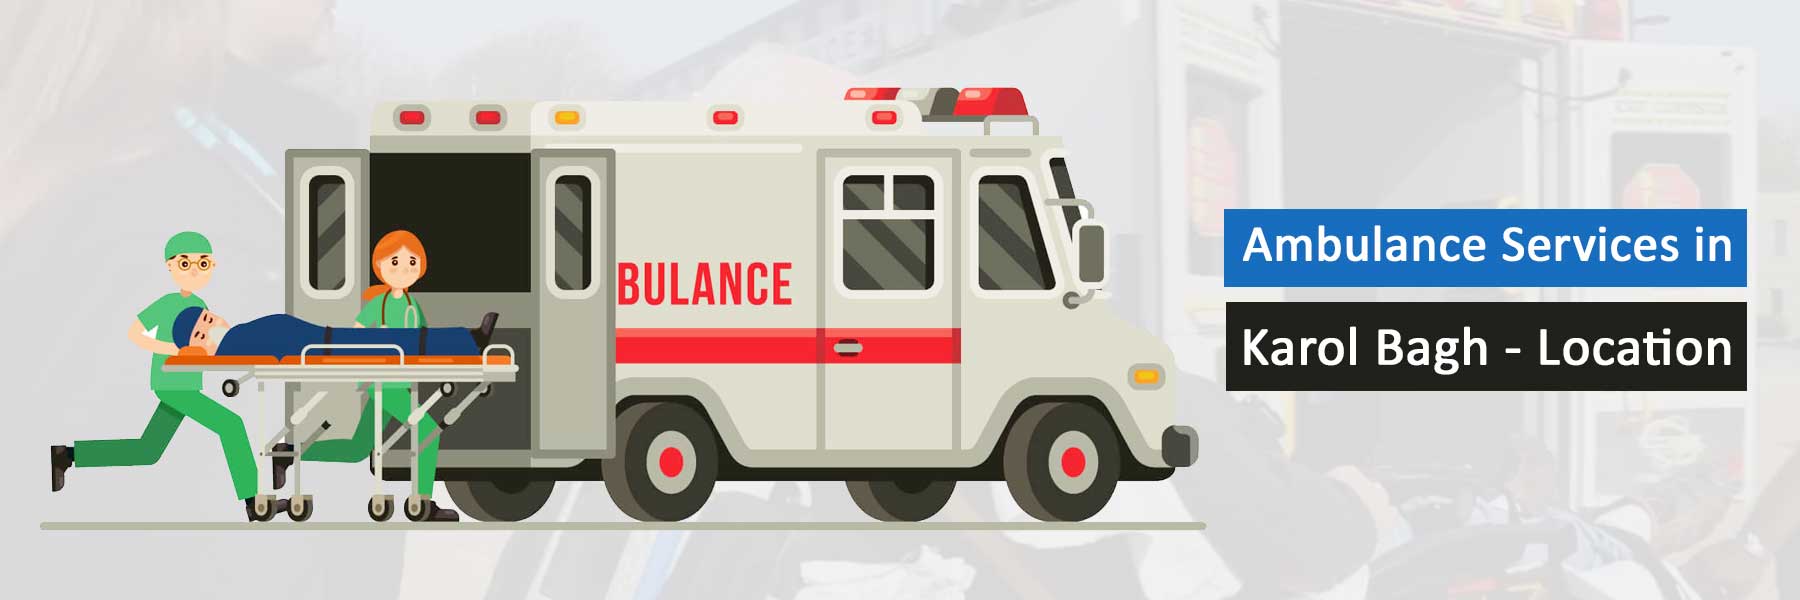 Ambulance Services in Karol Bagh